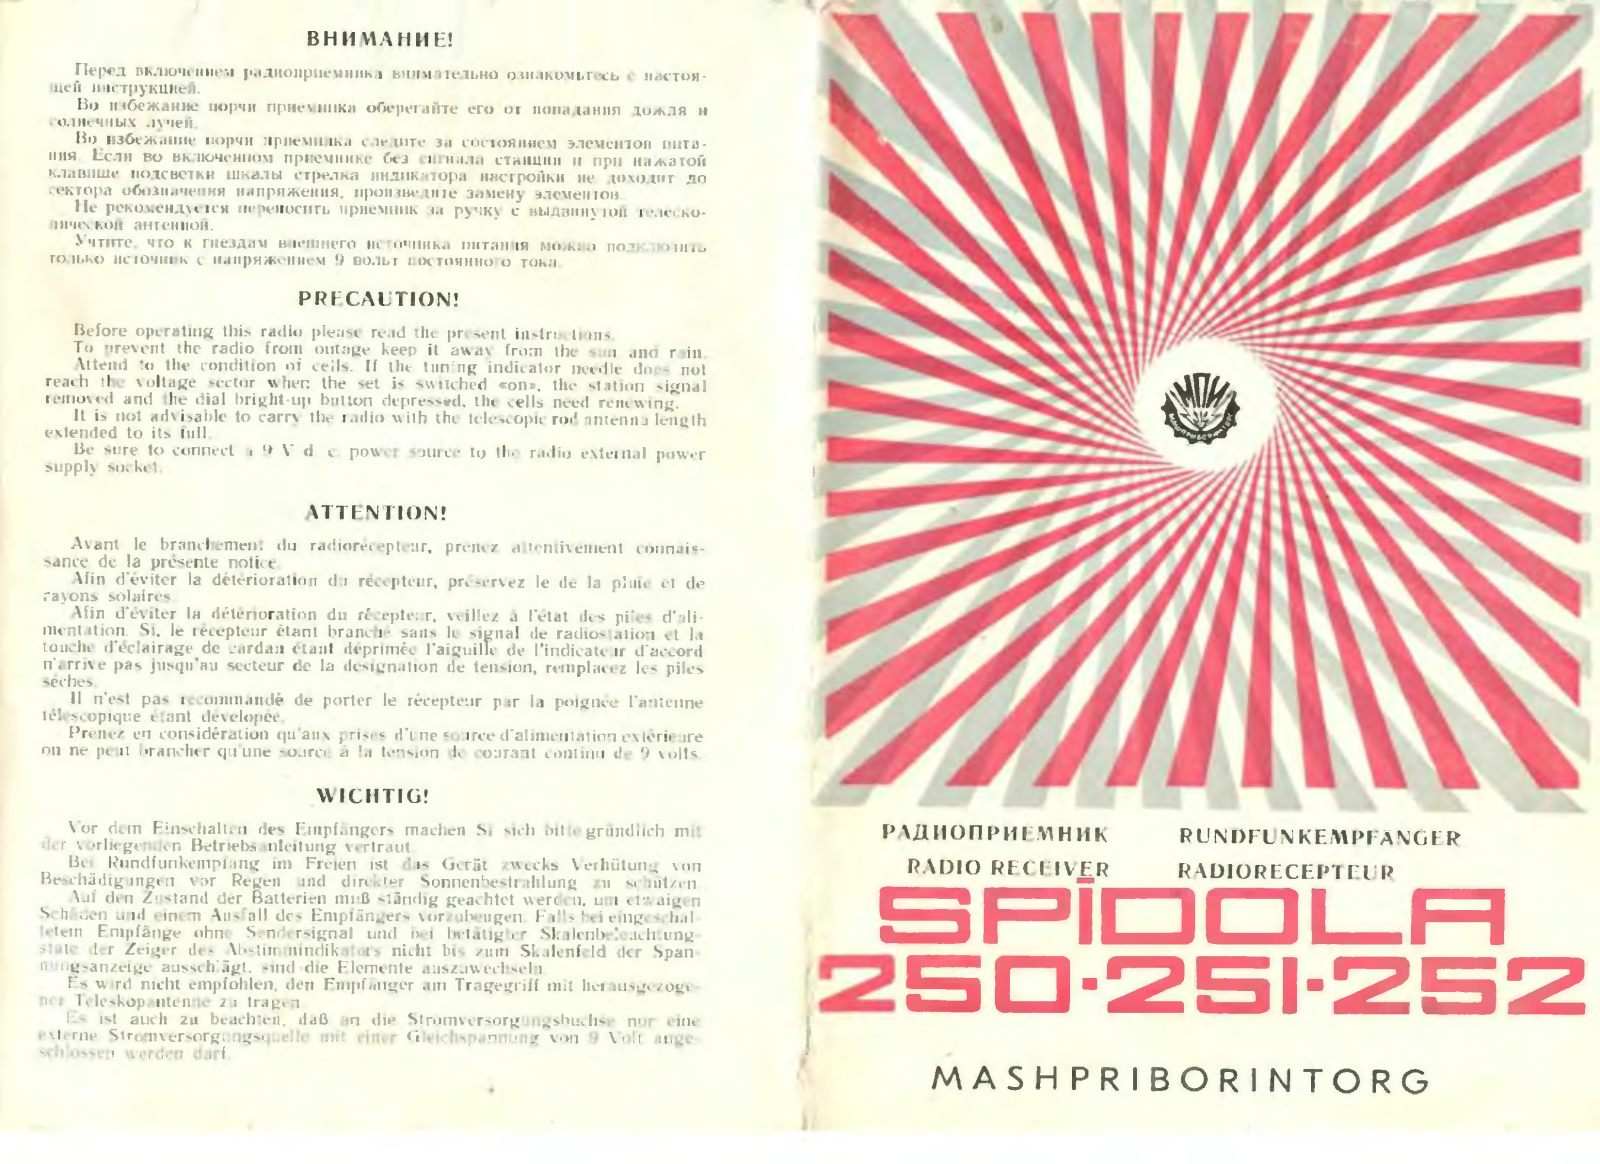 Mashpriborintorg Spidola 250, Spidola 251, Spidola 252 User Manual